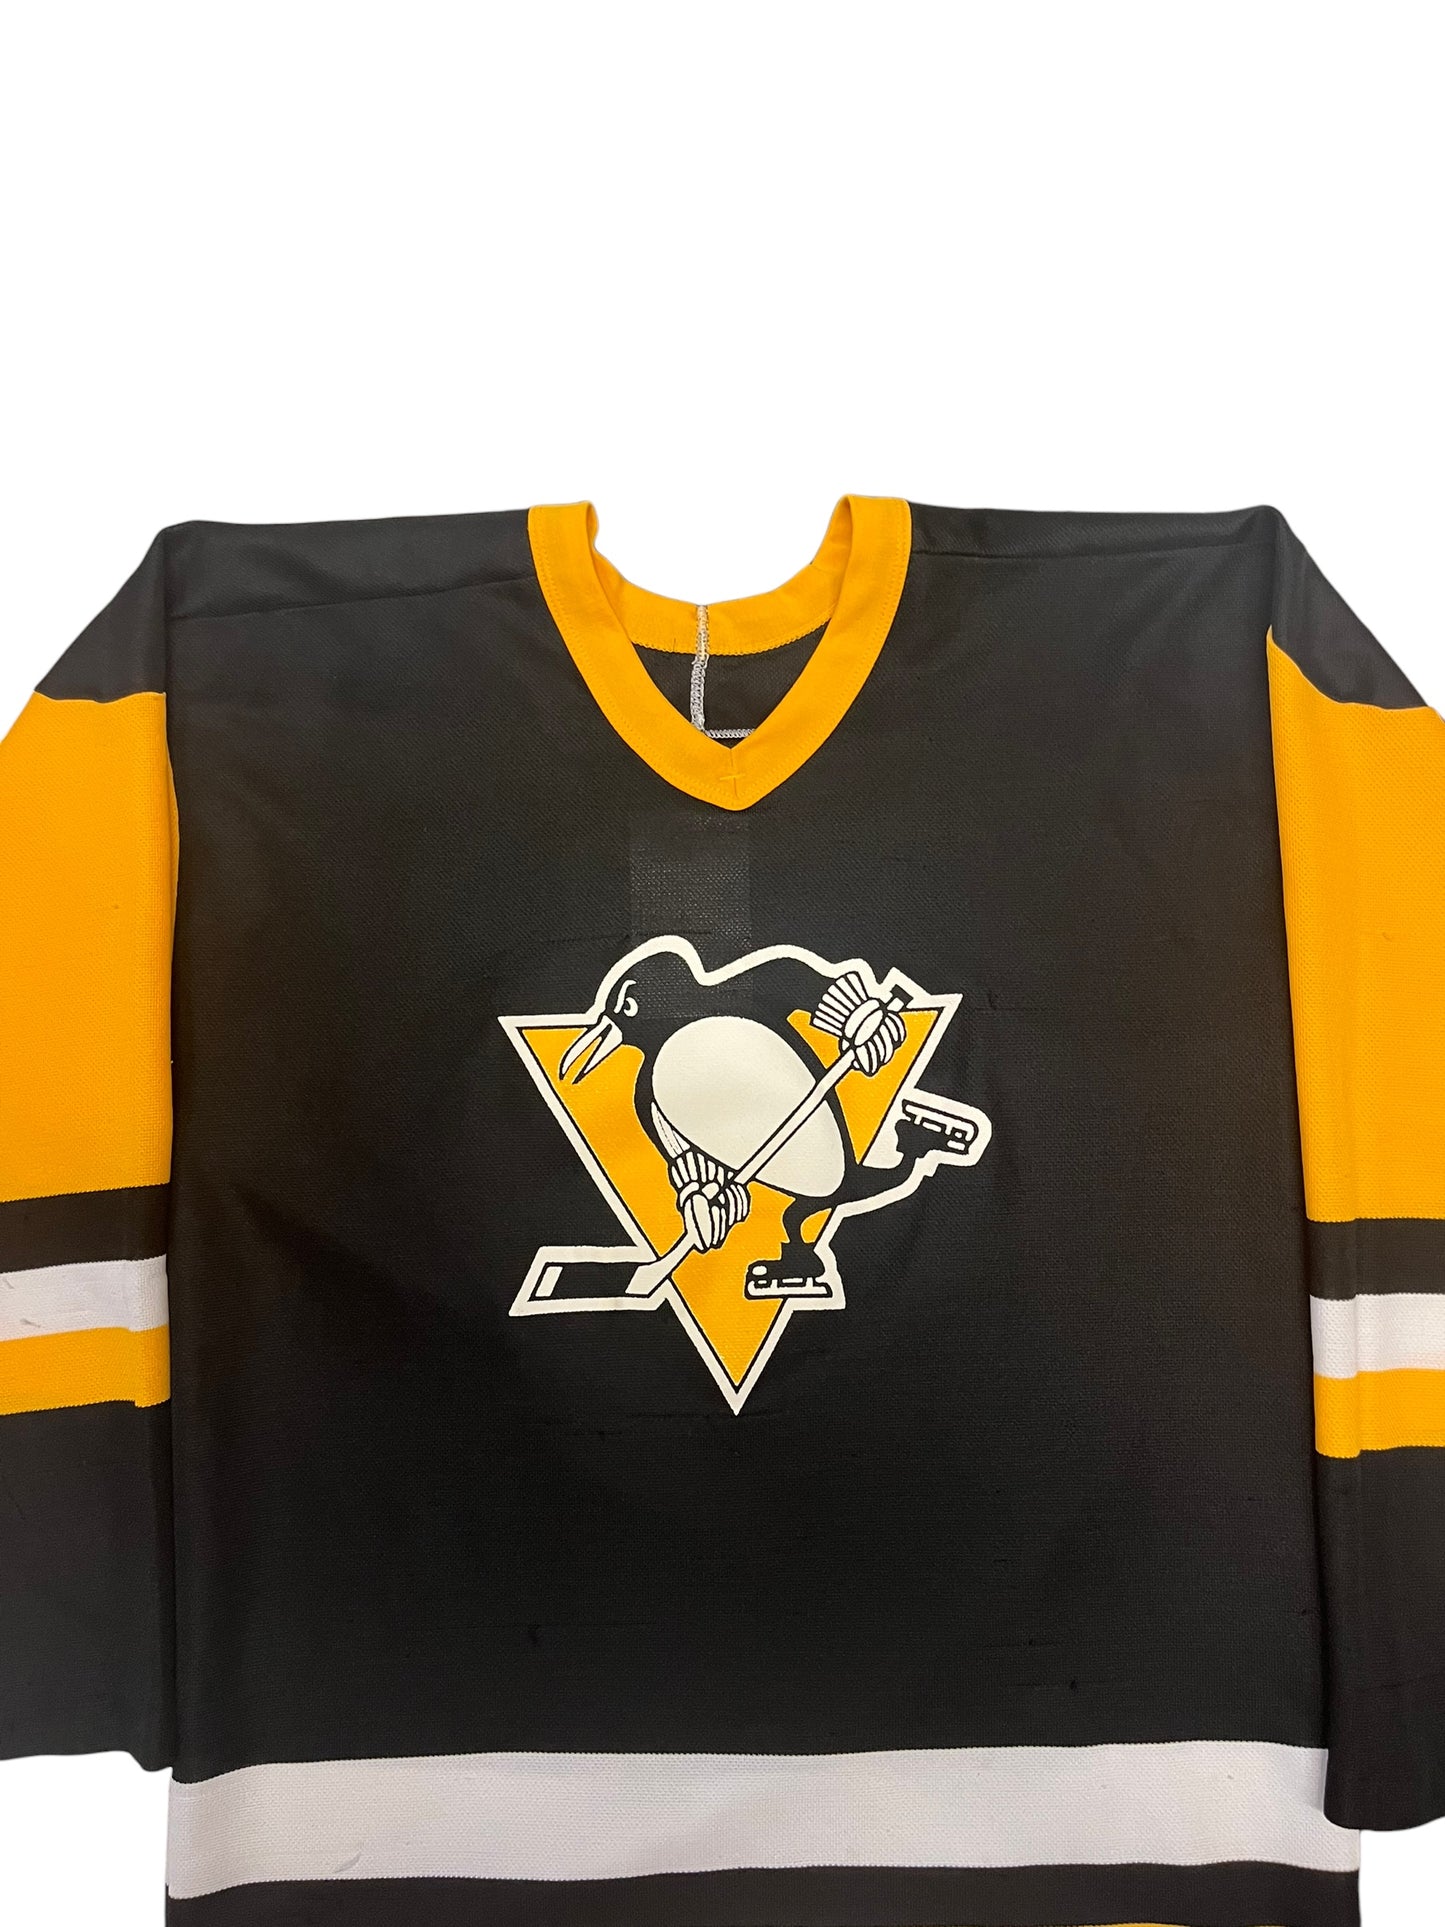 (S) Vintage Penguins Jersey